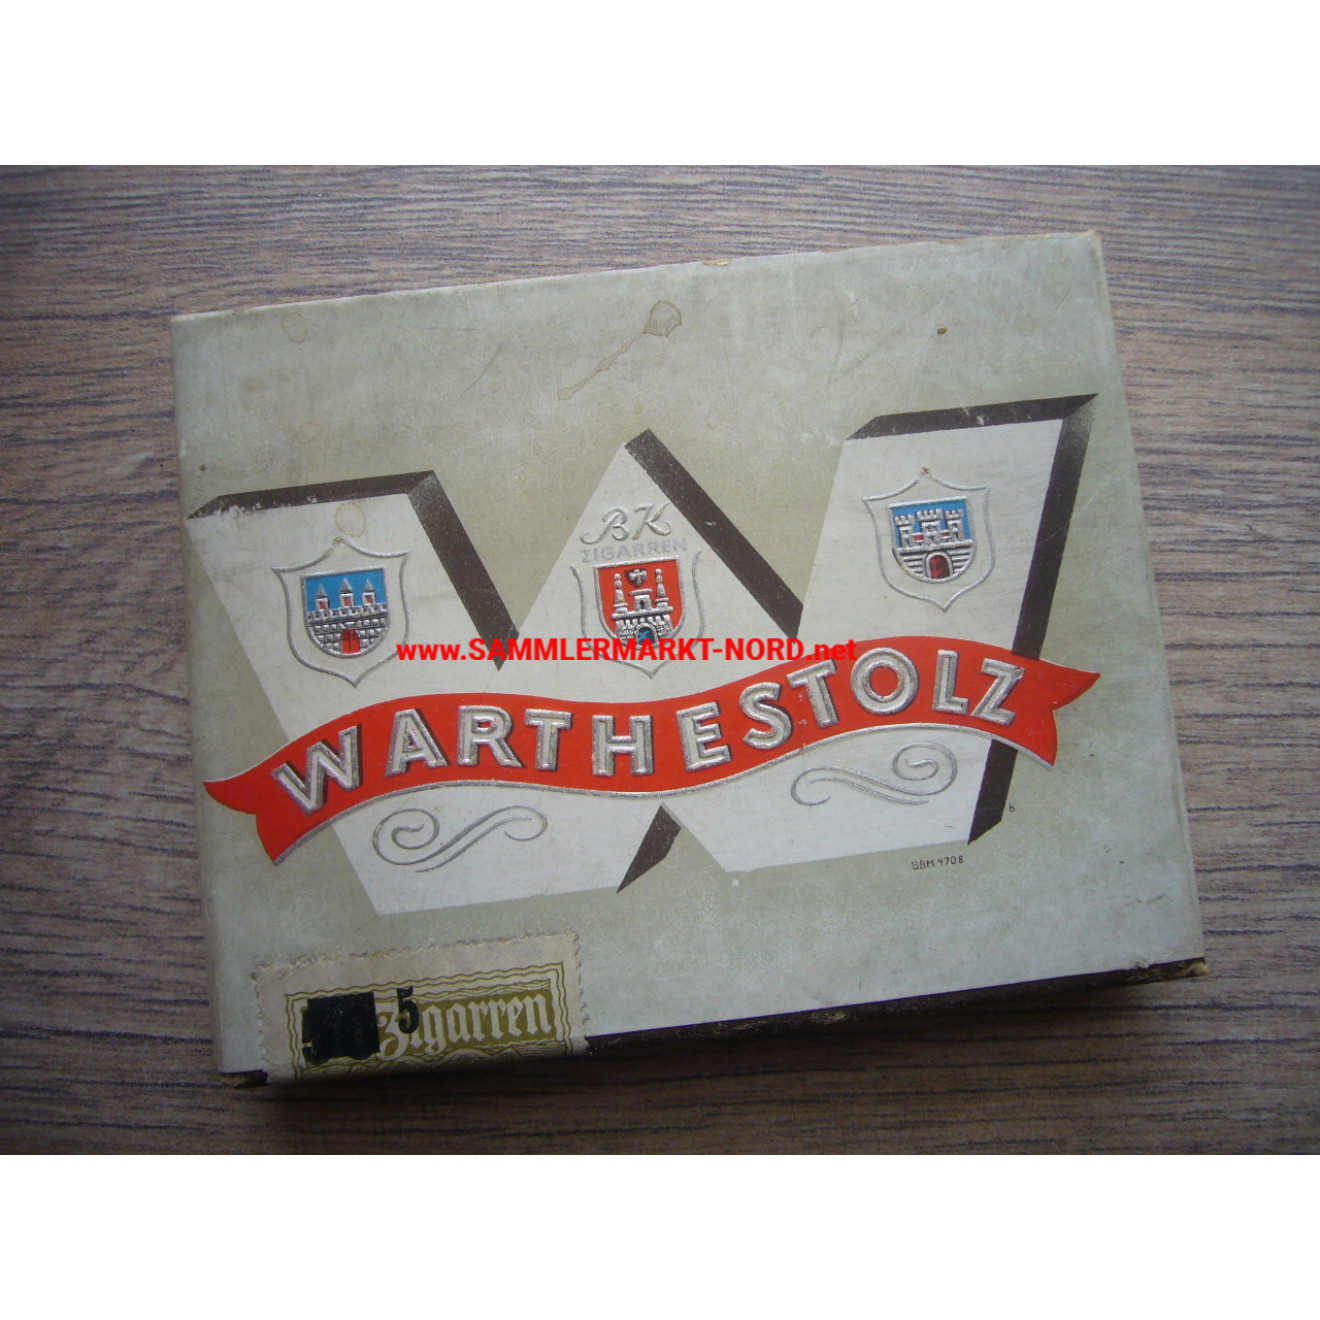 WARTHESTOLZ cigar pack (unopened)